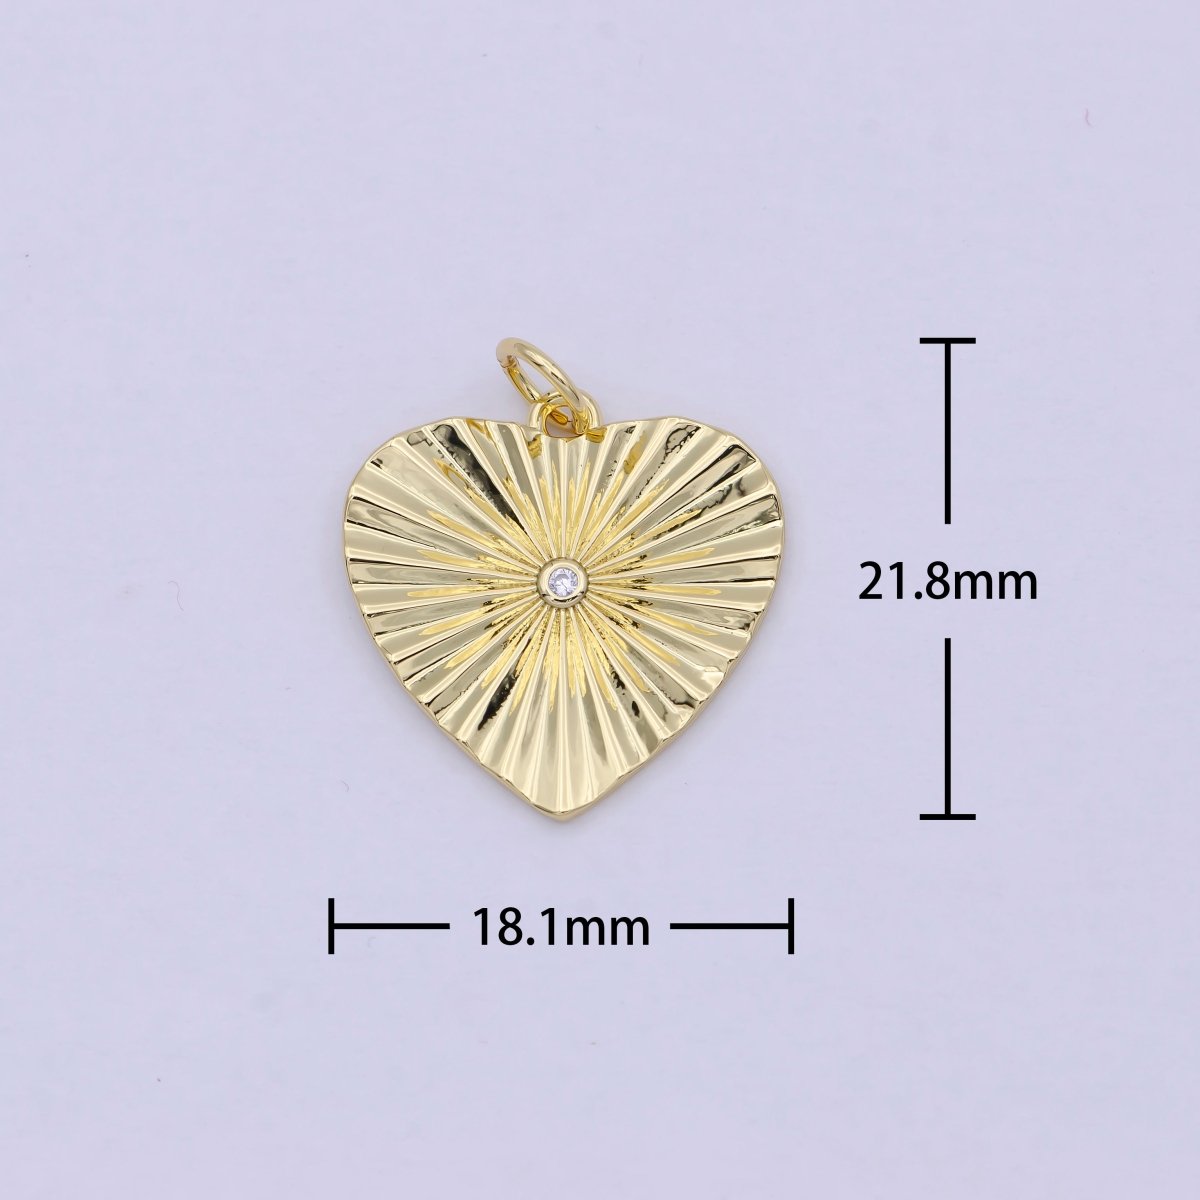 Mini Radiant Heart Charm Gold Filled Heart Pendant for Necklace Bracelet Earring Supply E-744 - DLUXCA